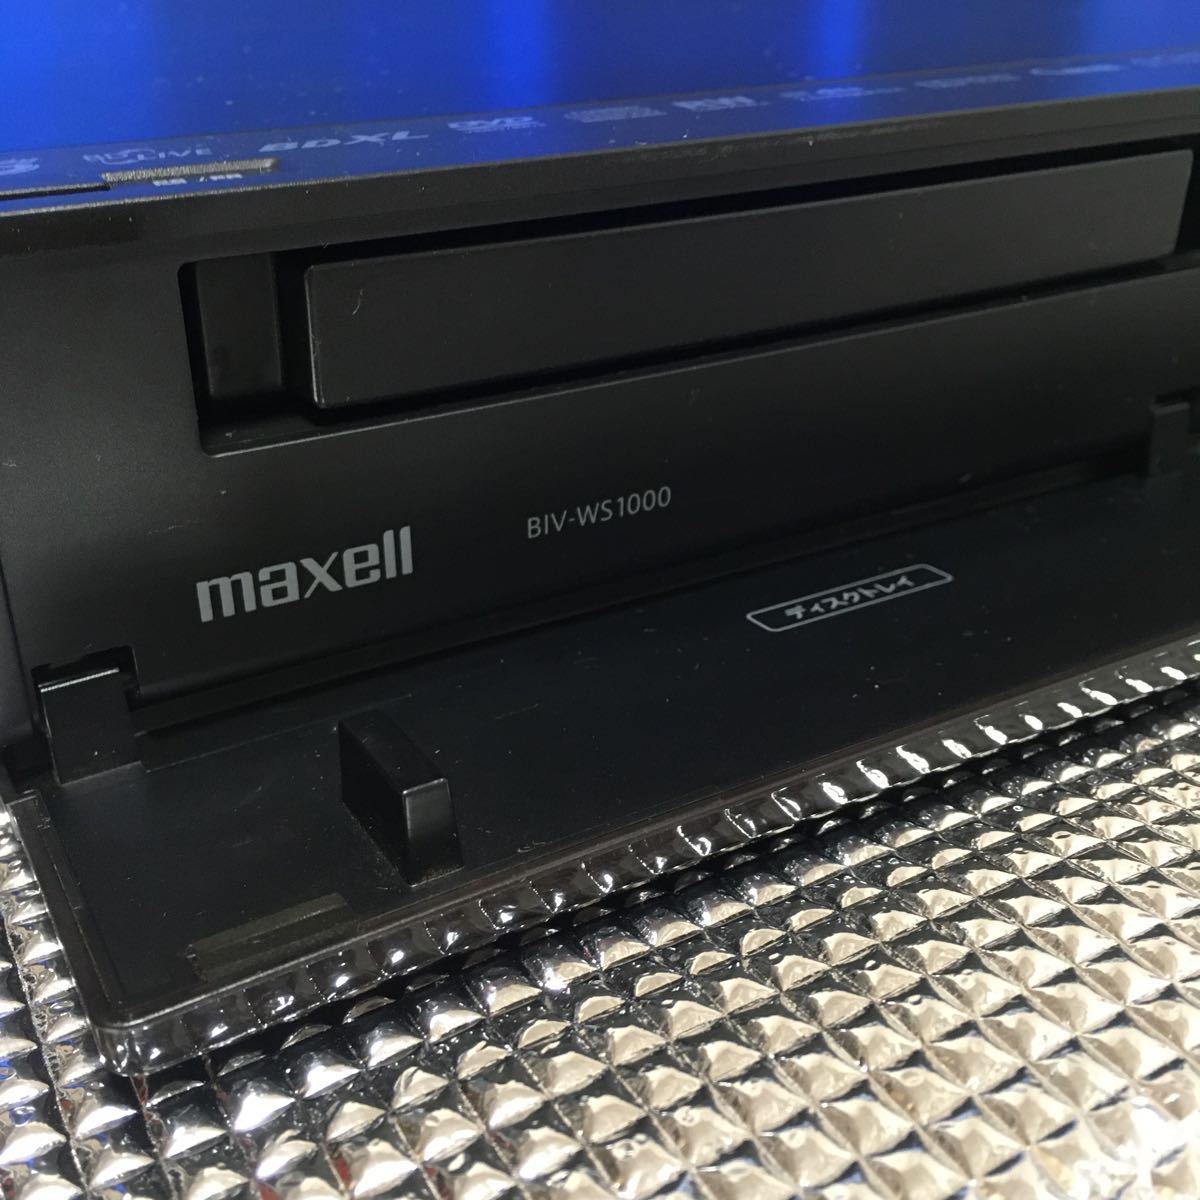 maxellマクセルBIV-WS1000ブルーレイレコーダー 2TB換装 カセットHDD